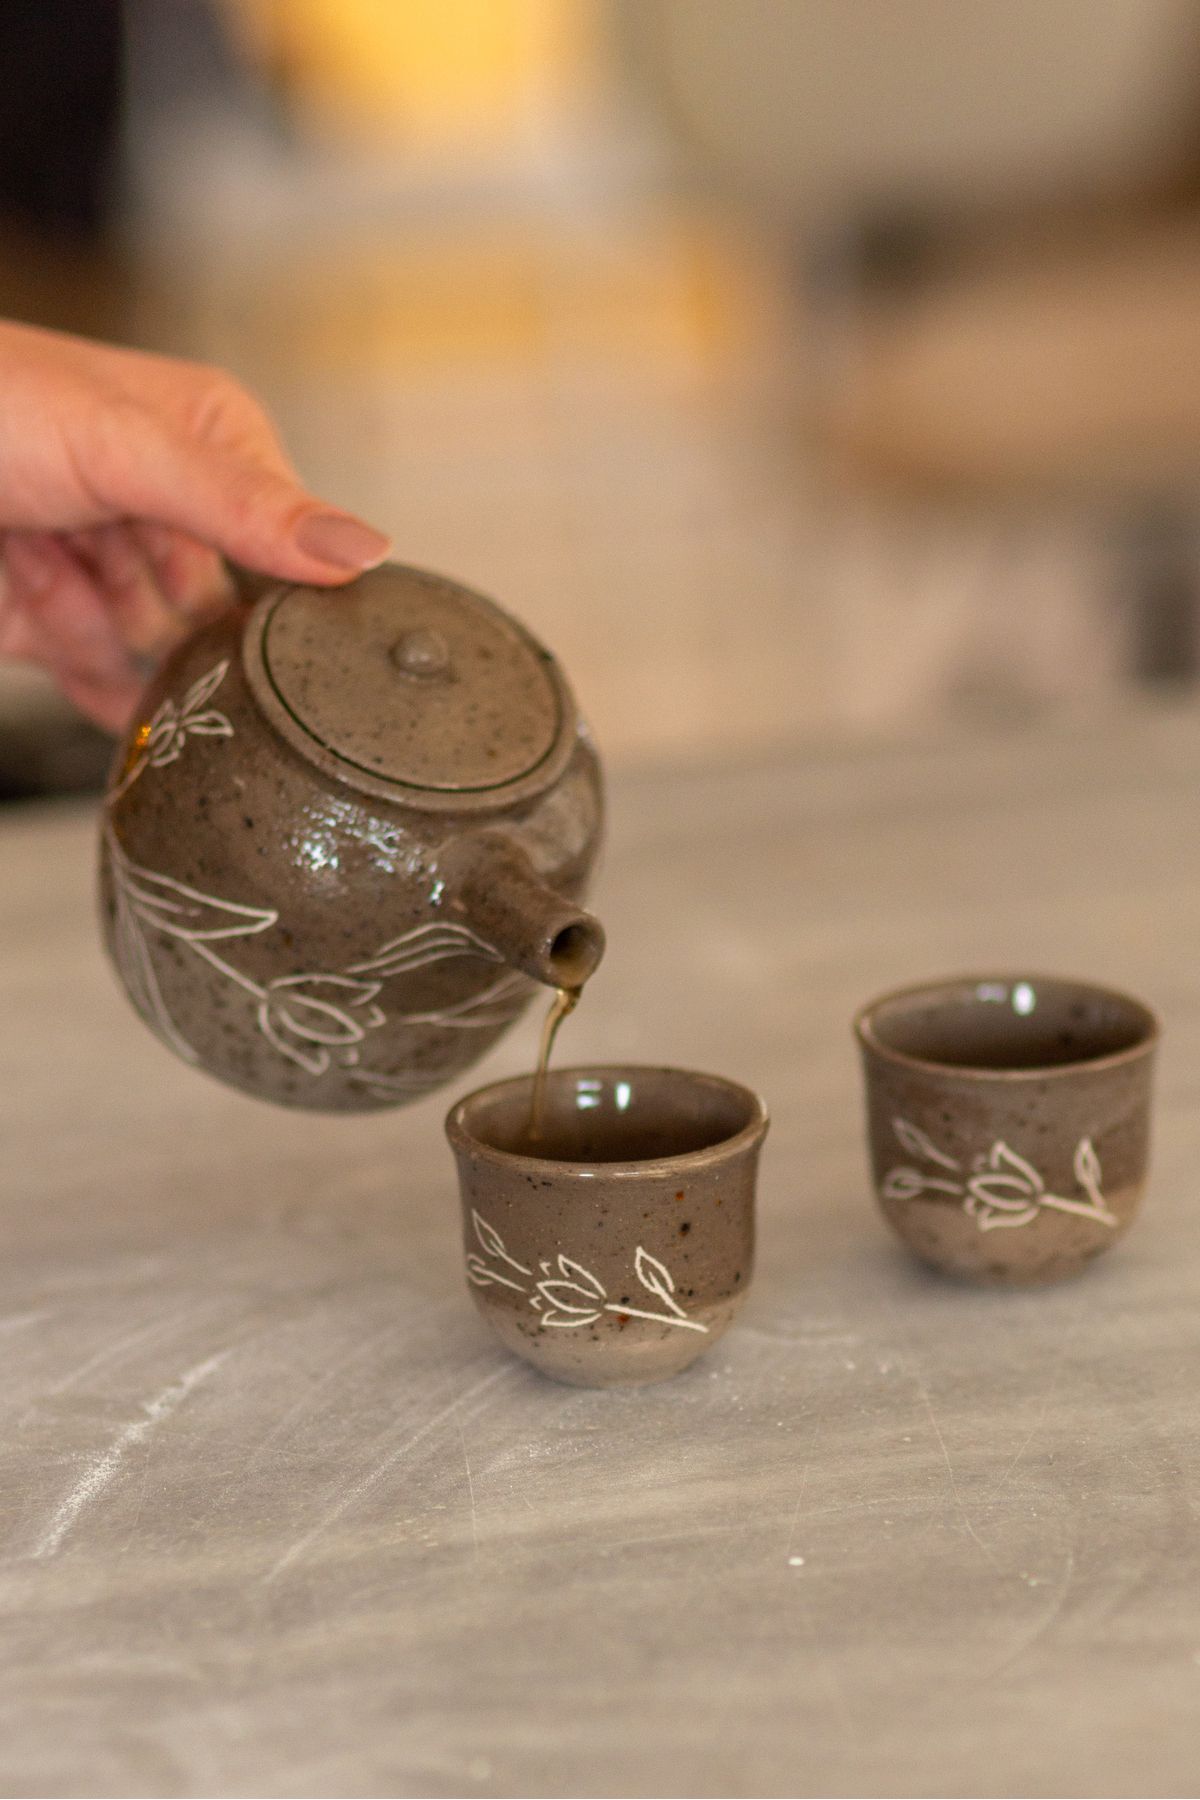 cerabien Seramik Çay Seti, El Yapımı Japon Stili Çiçekli Demlik ve Fincan, Yeşil Çay Seti